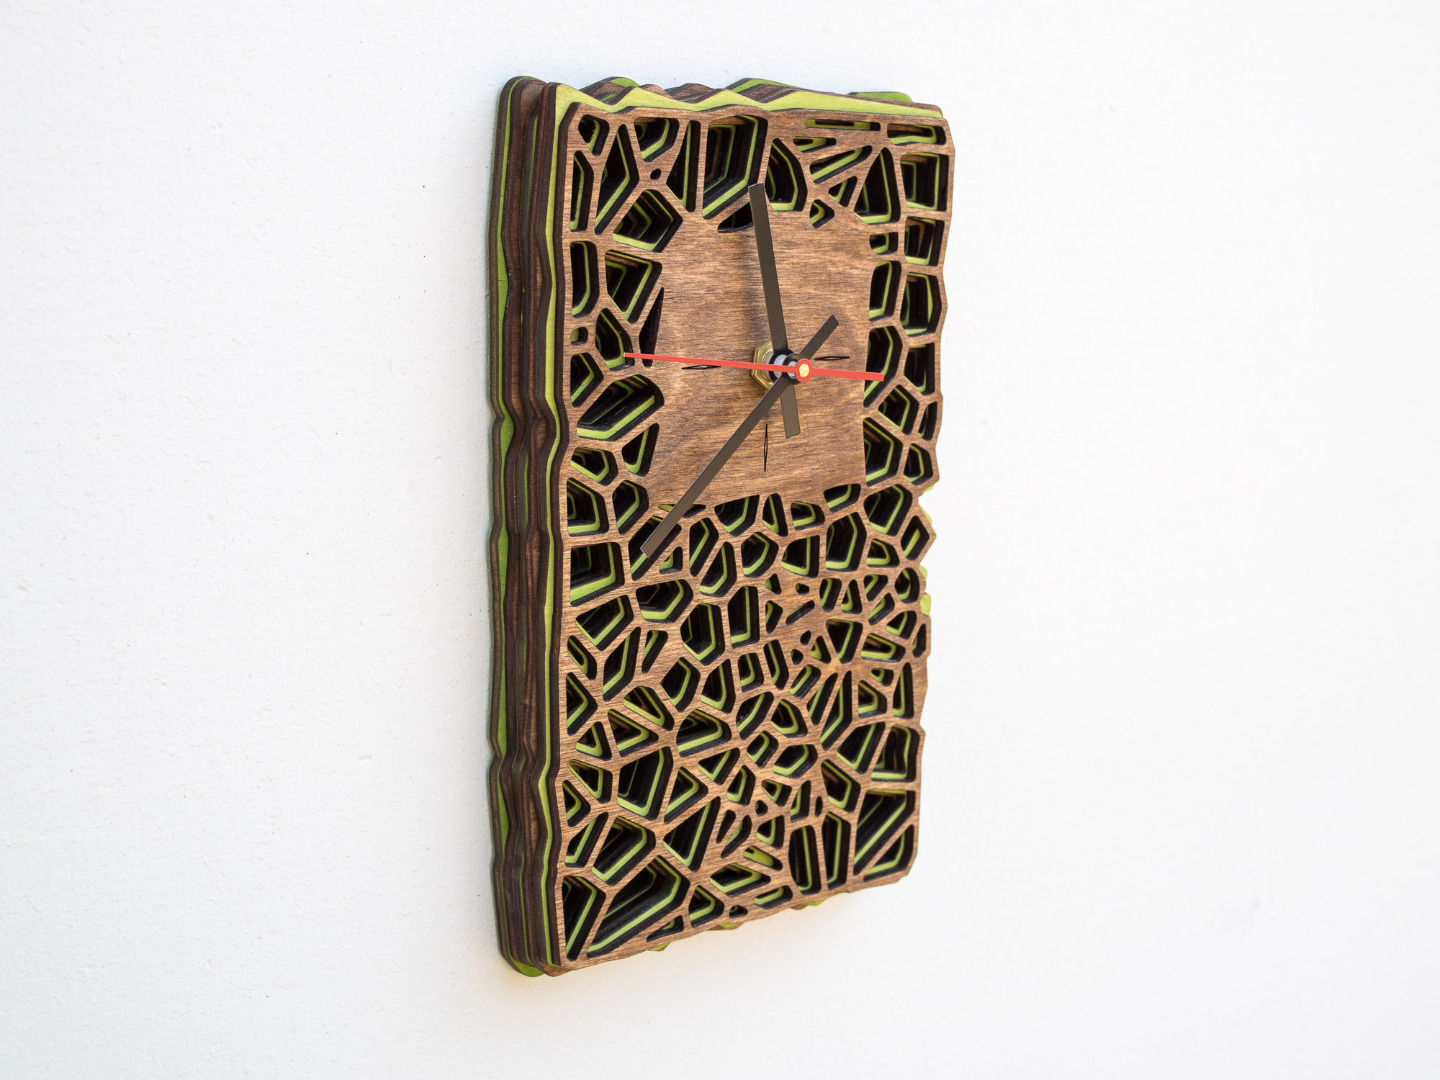 Uhr aus Holz für Schreibtisch oder Wand - Organisches Zweifarbiges Design in Walnuss und Maigrün 10